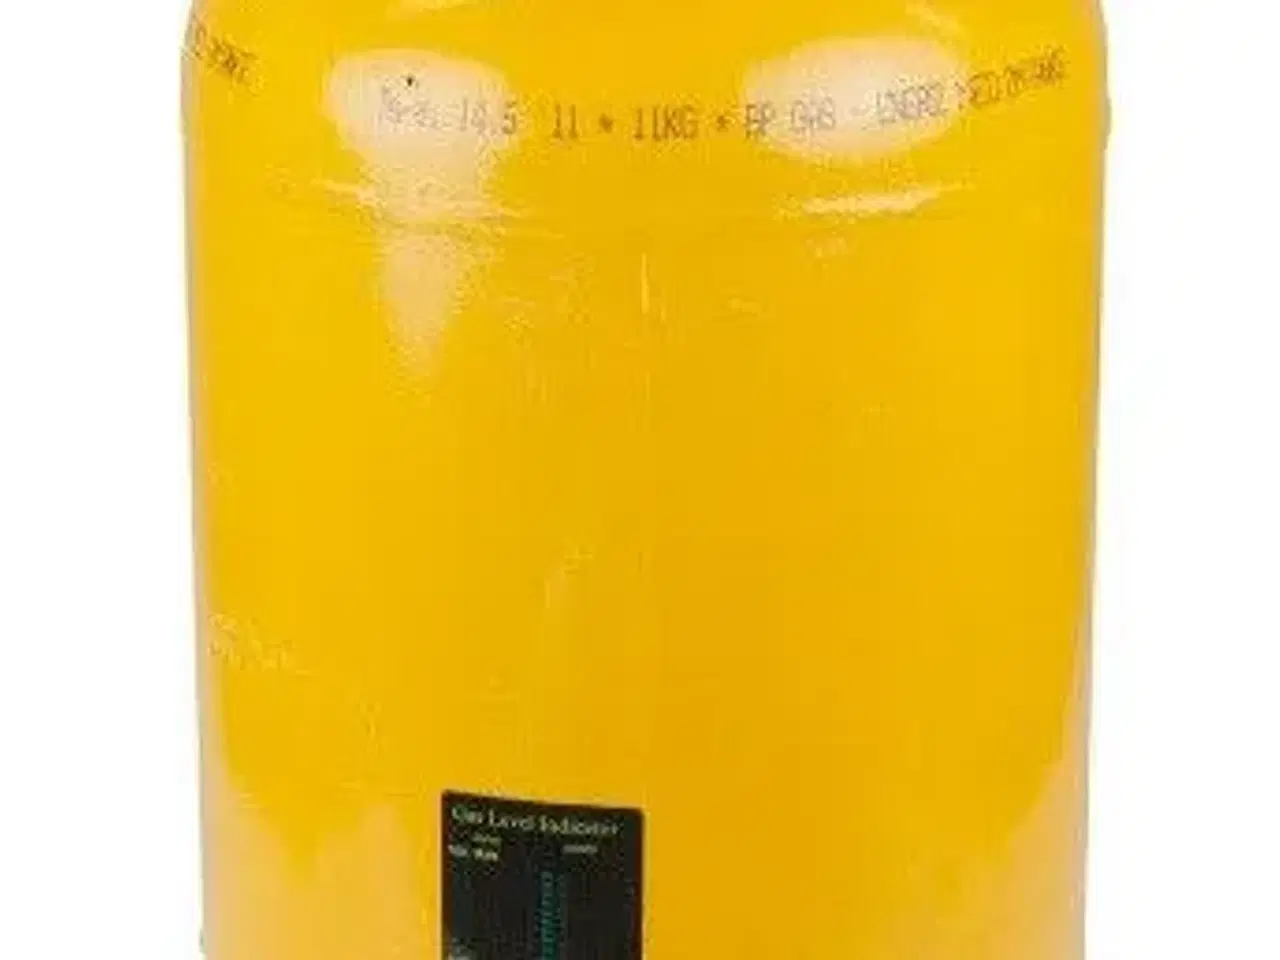 Billede 1 - 11 kg gasflaske sælges